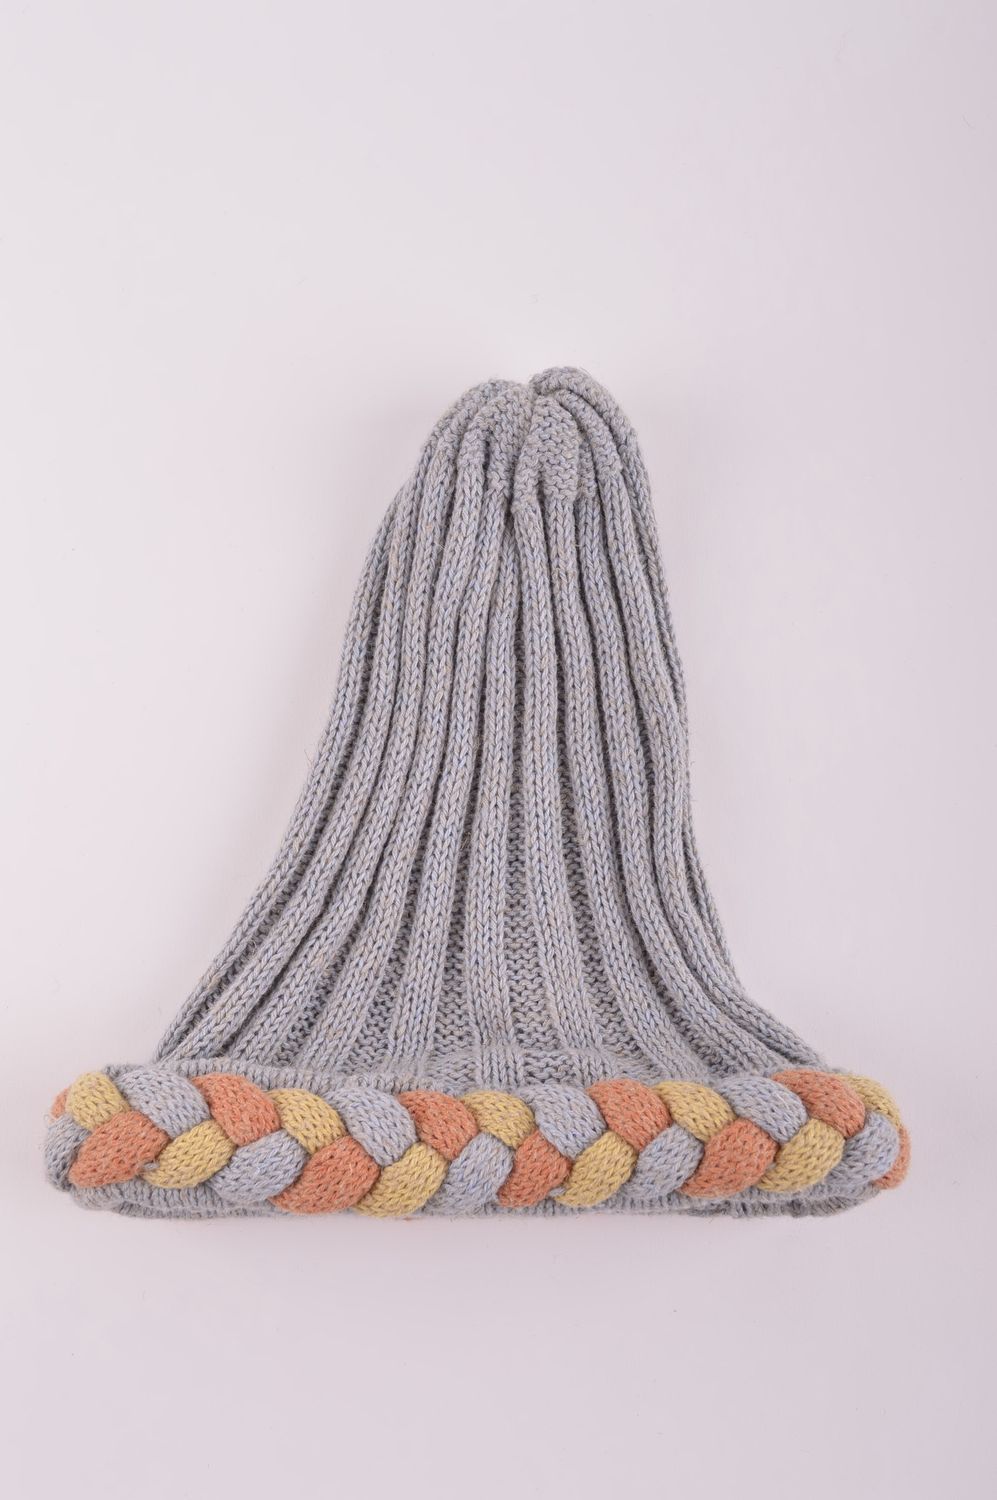 Handmade winter hat women hat knitted hat warm winter hat warm accessories photo 4